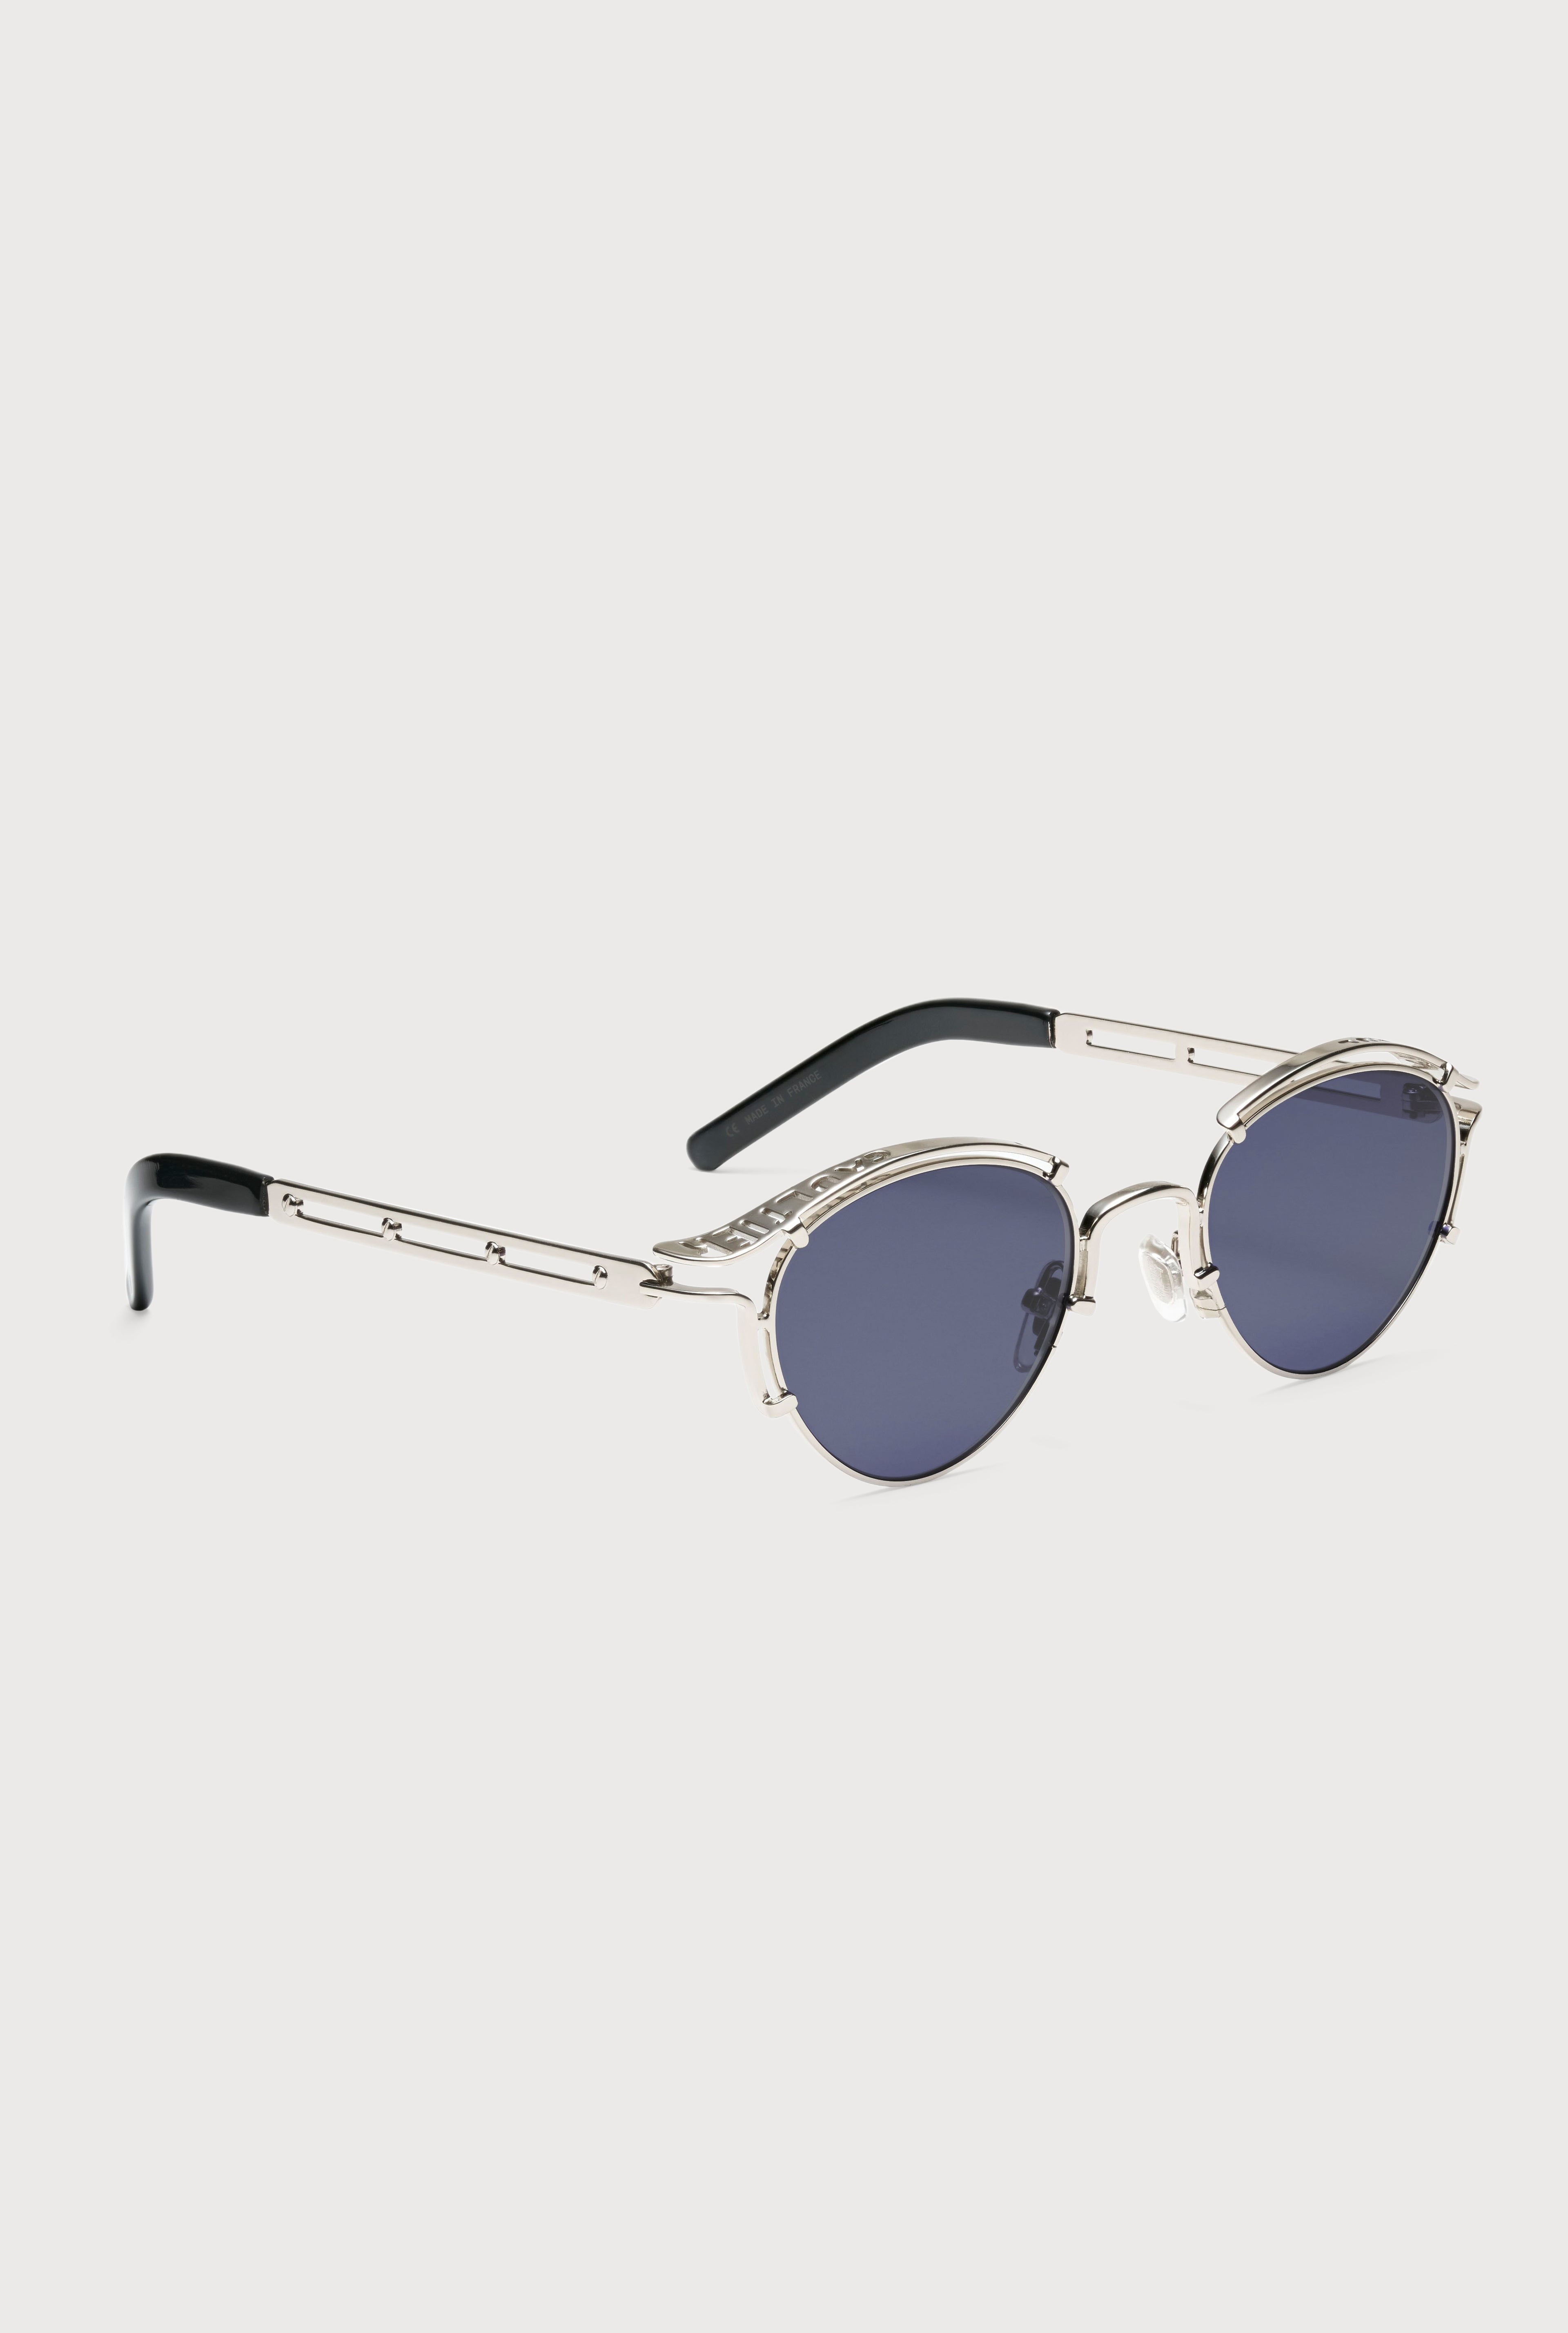 The Silver 56-5102 Sunglasses